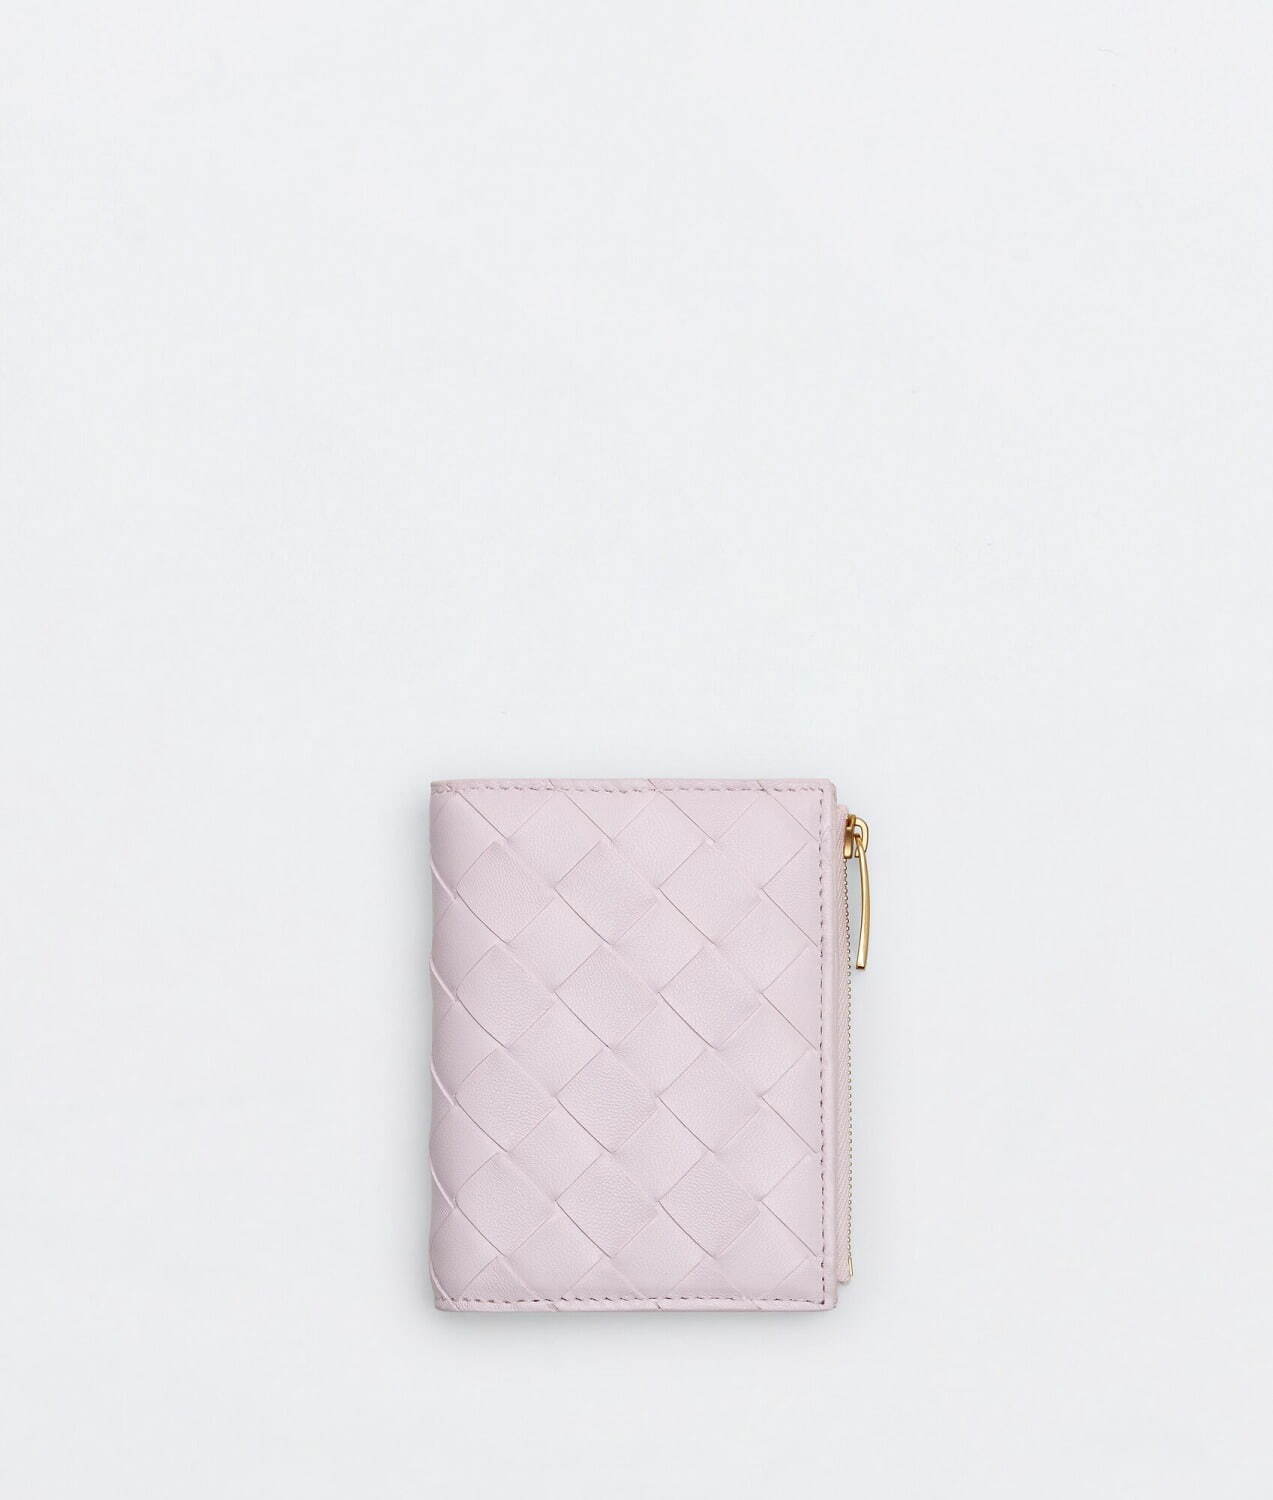 ボッテガ・ヴェネタのレディース財布 - 淡い“パステル”ピンクレザーのミニ財布